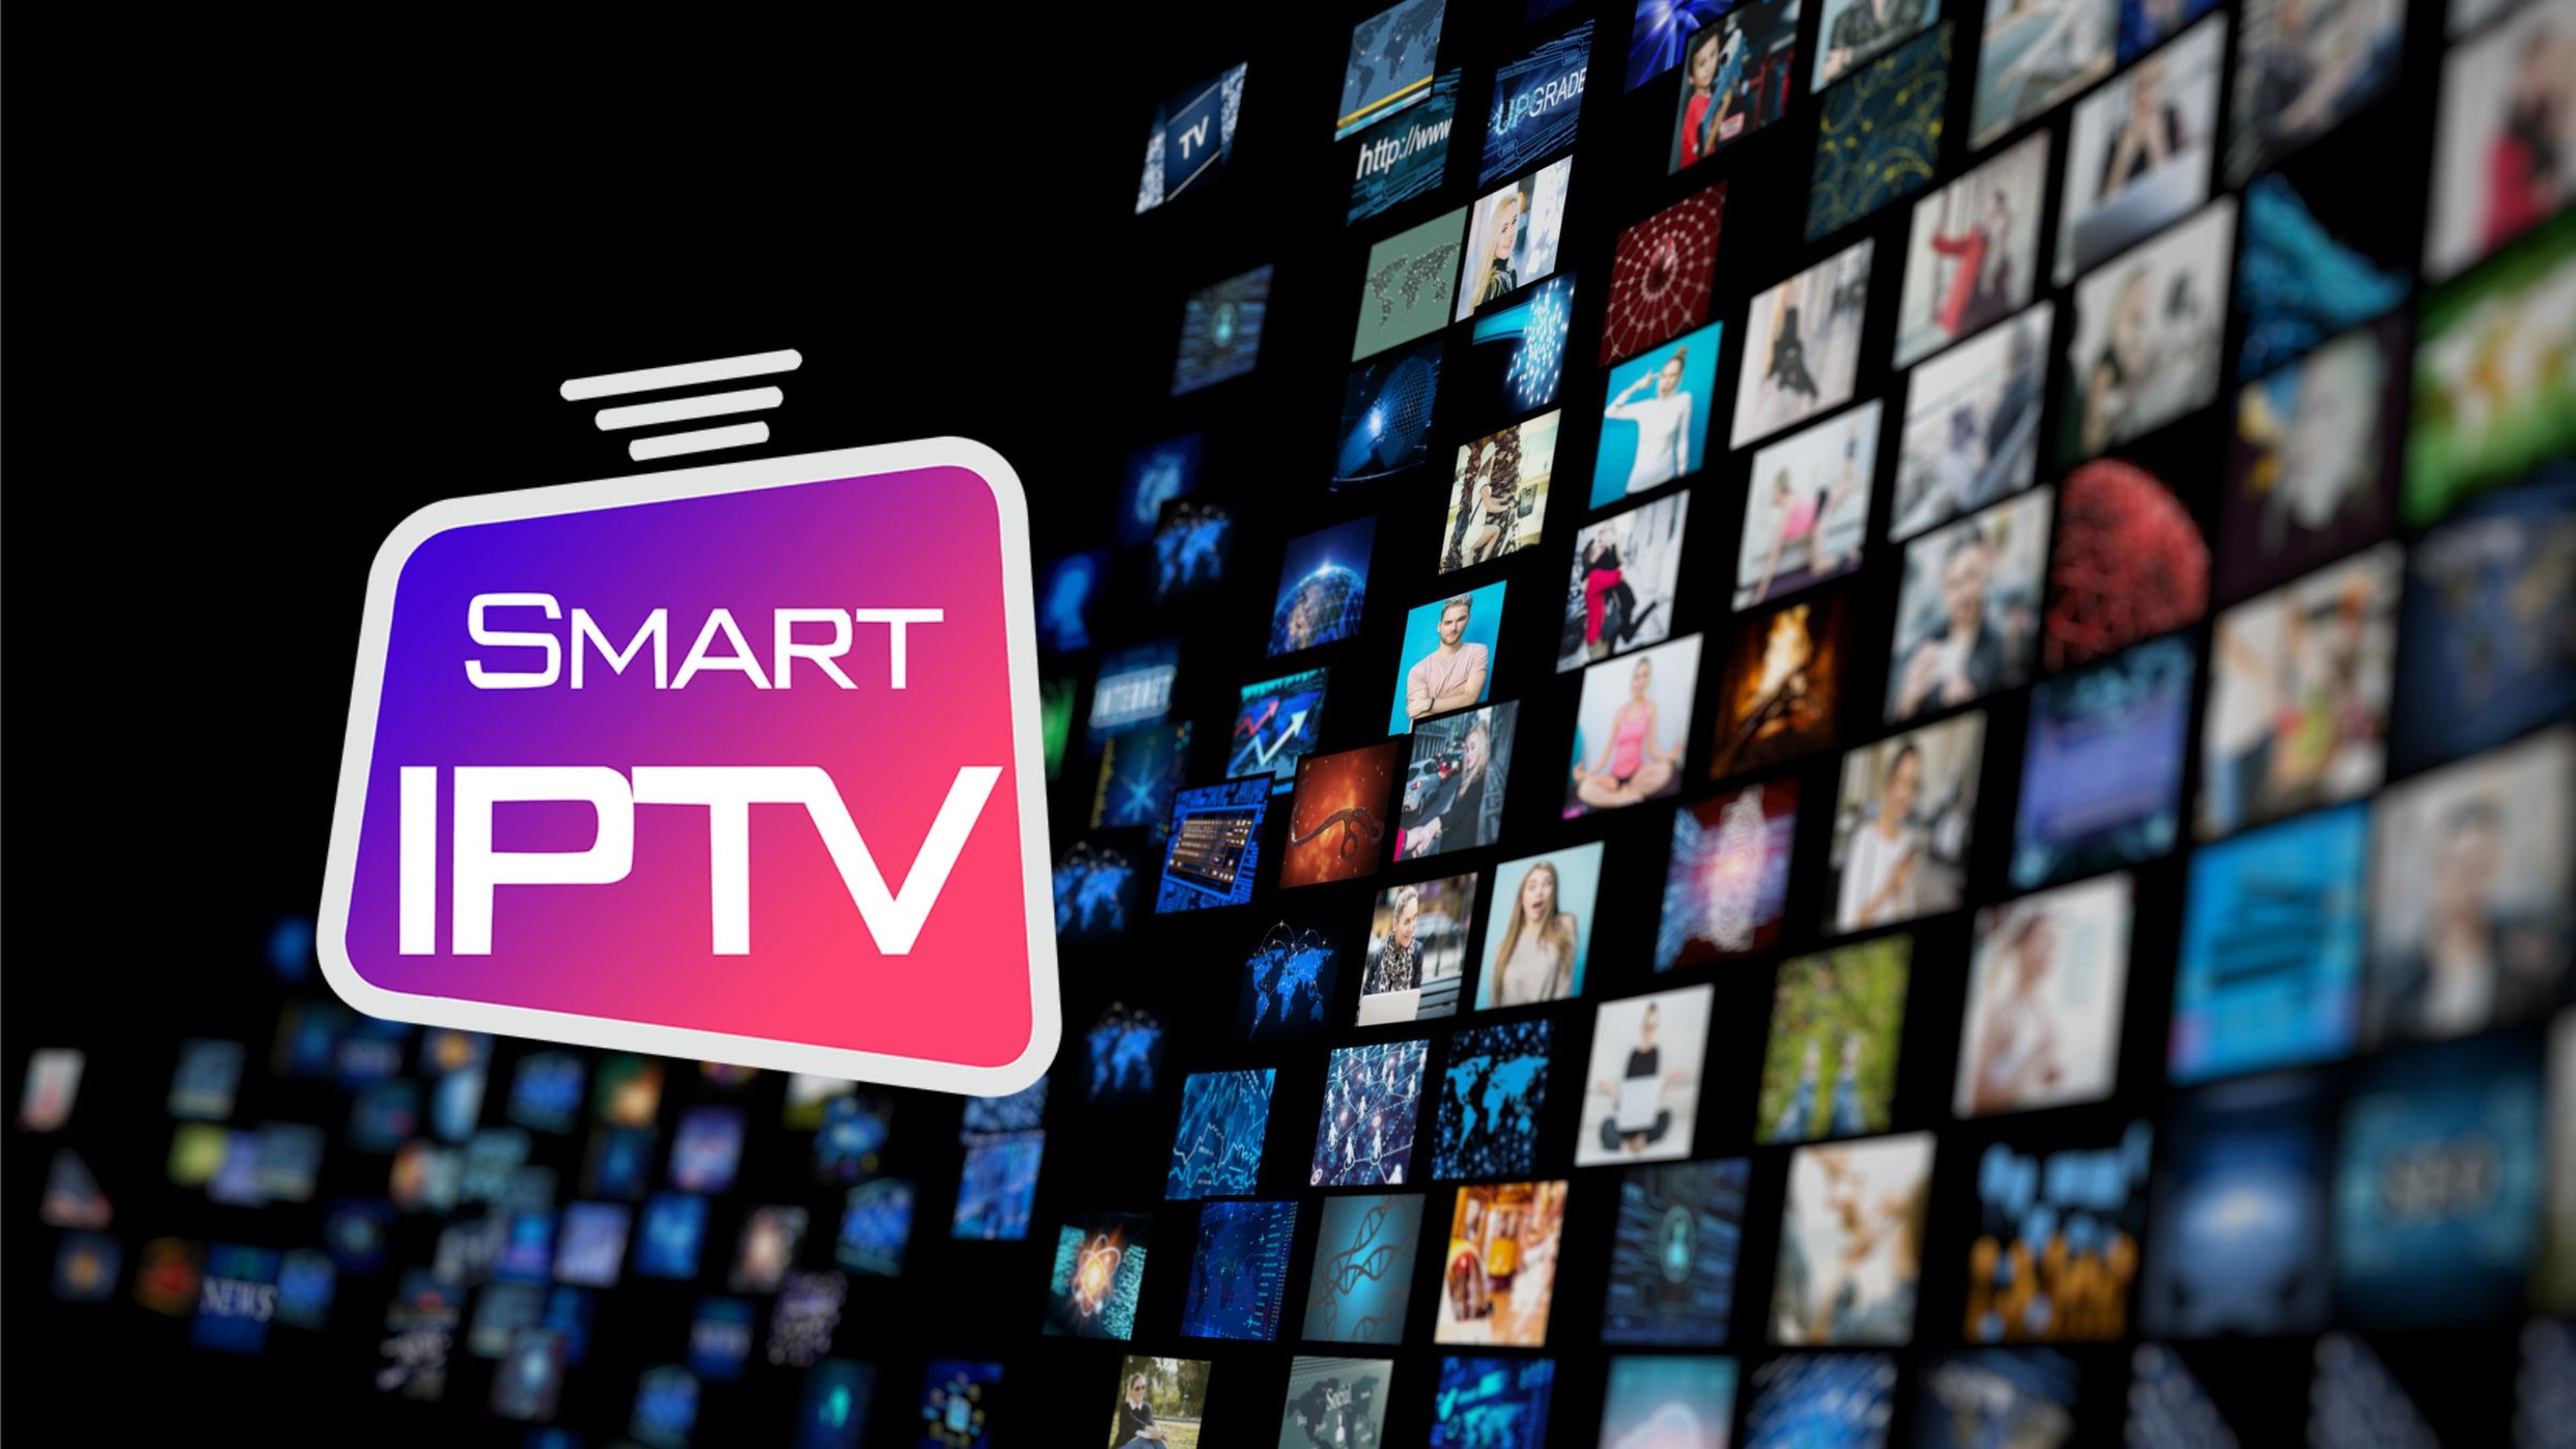 SmartIPTV se une a Acestream y ya no puede utilizarse en España